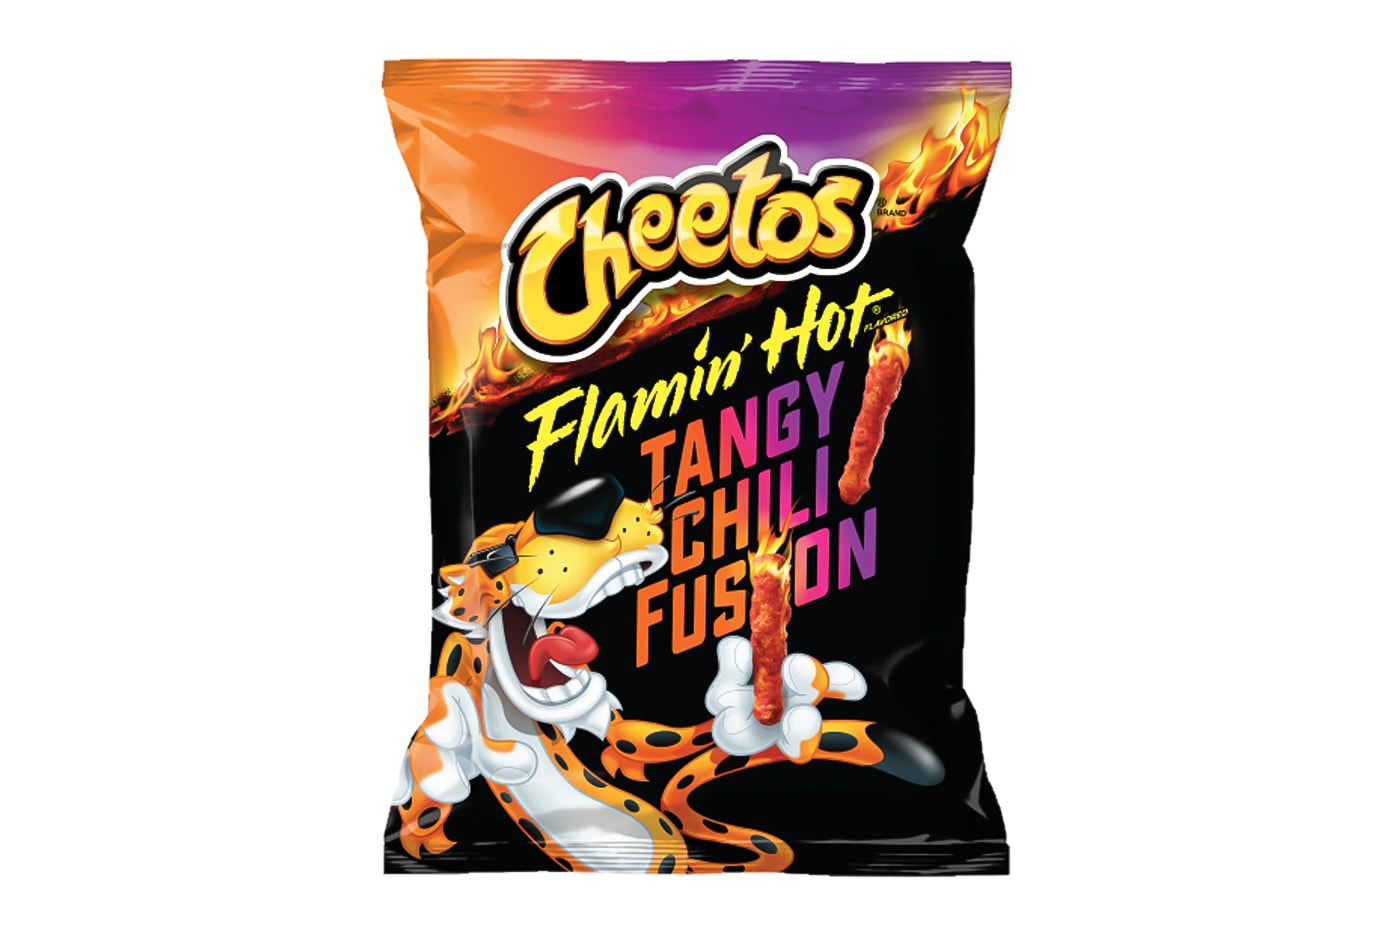  Cheetos Duster - Turn Cheetos into Delicious Cheetos